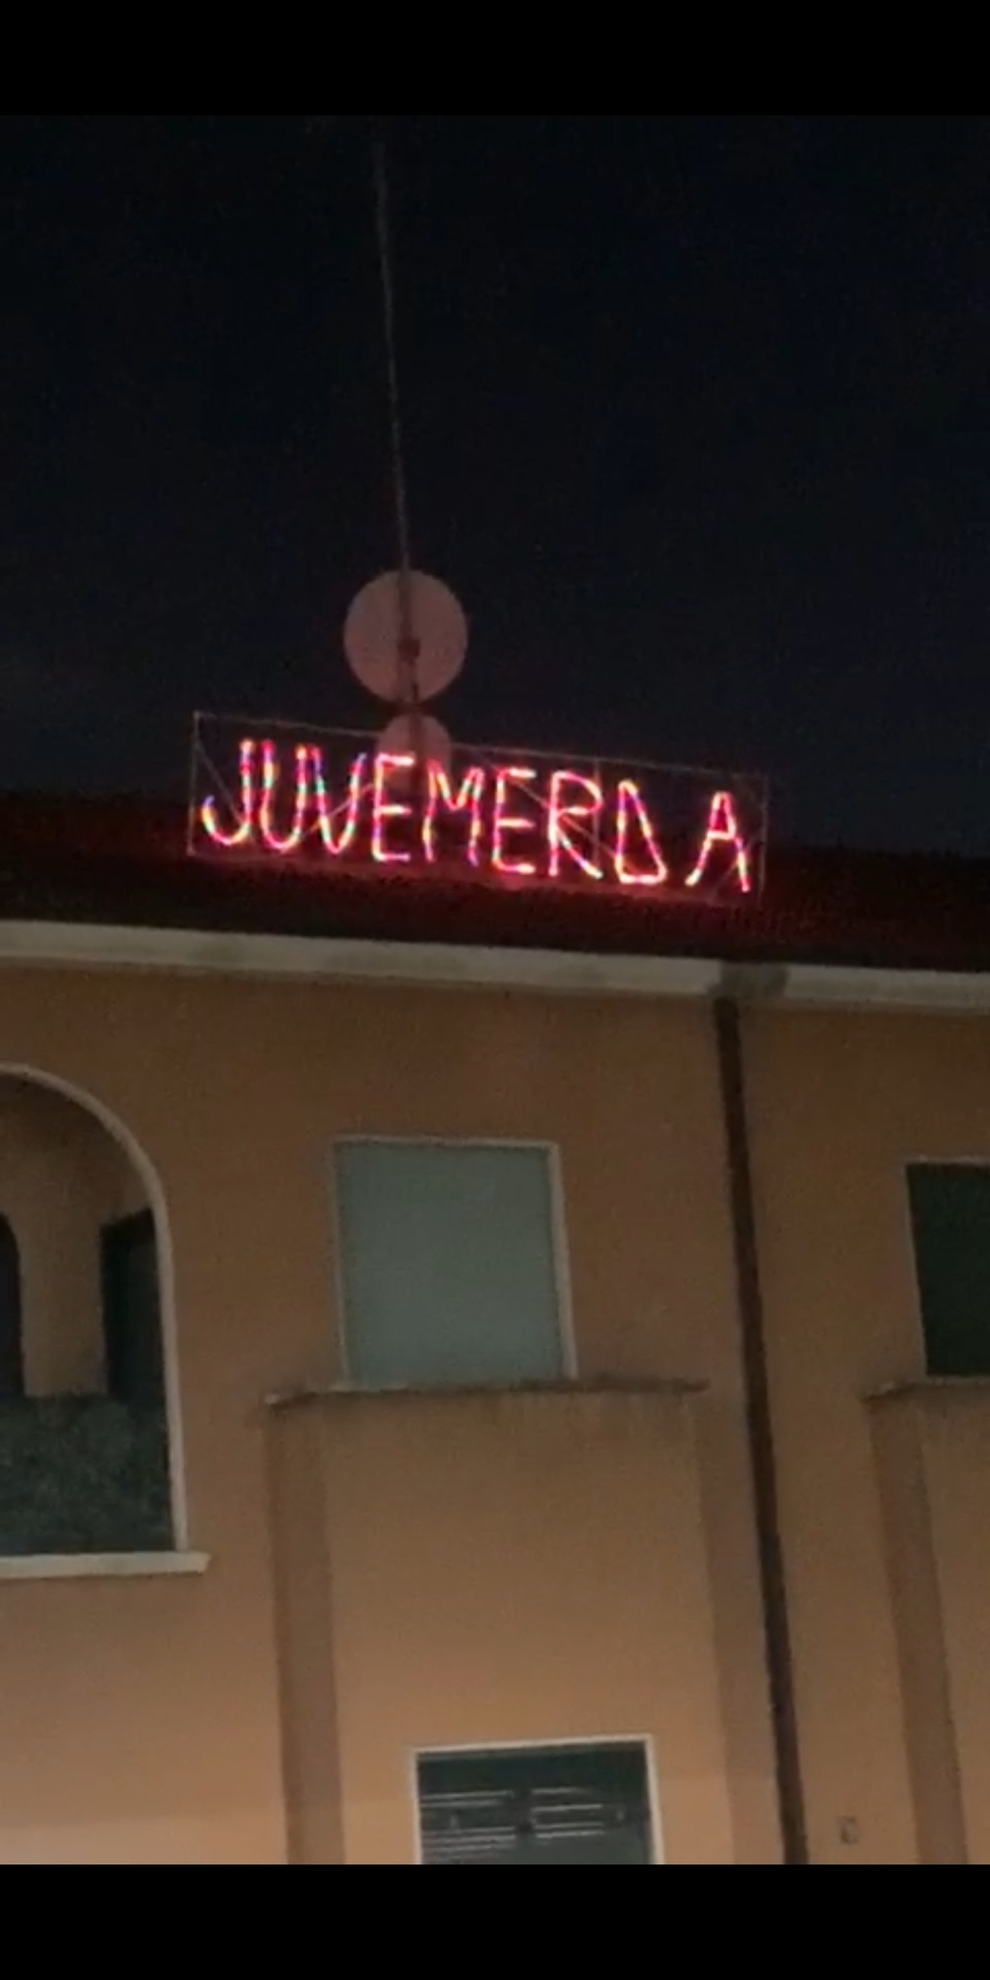 Addobbi Natalizi Juventus.Milano Natale Con Luminaria Choc Sul Tetto Di Una Casa Juve M A